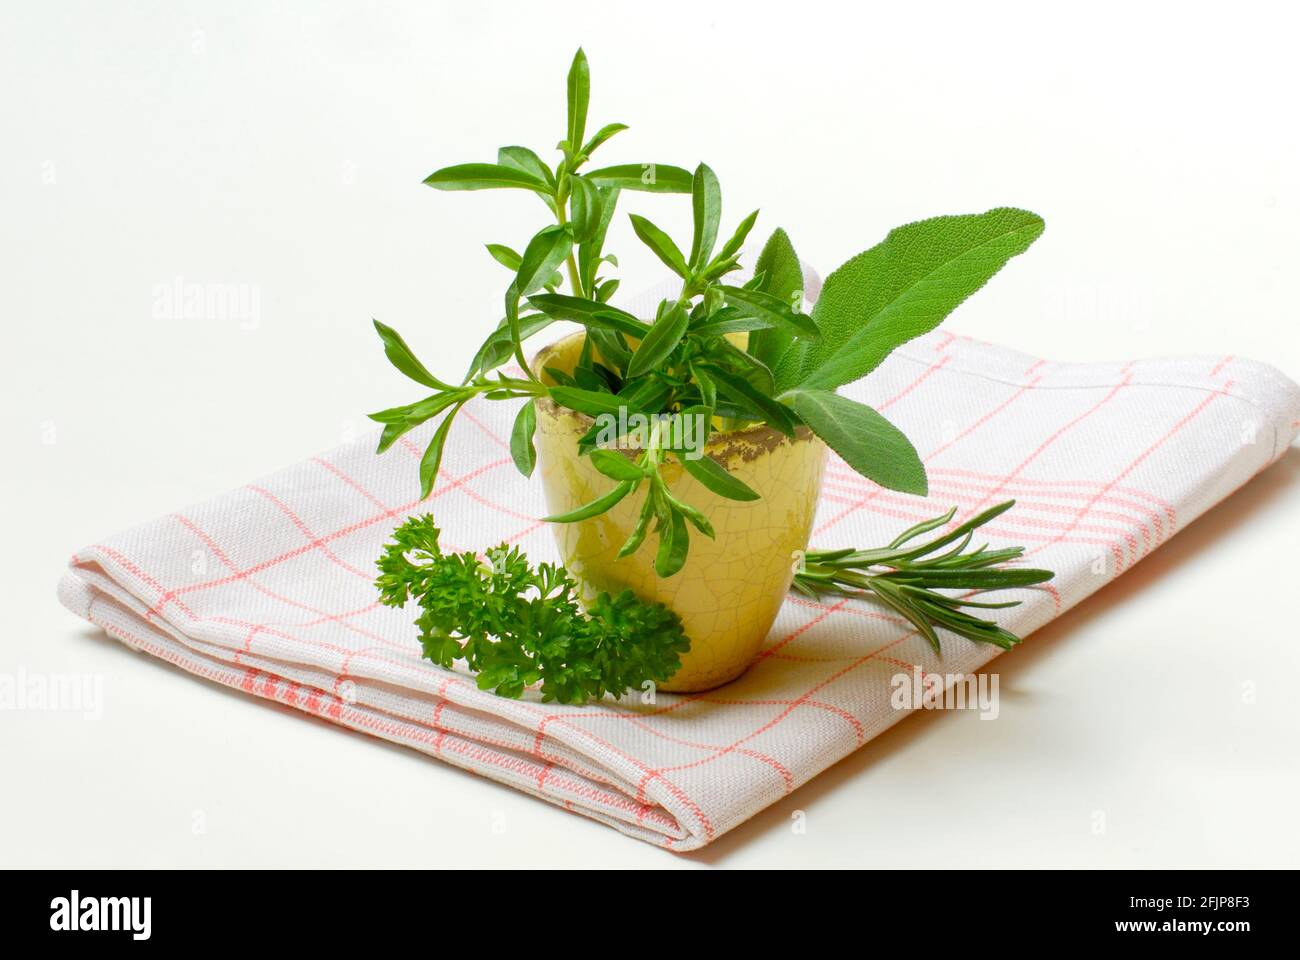 Savory, Savory, Savory (Satureja hortensis) parsley, rosemary, sage Stock Photo